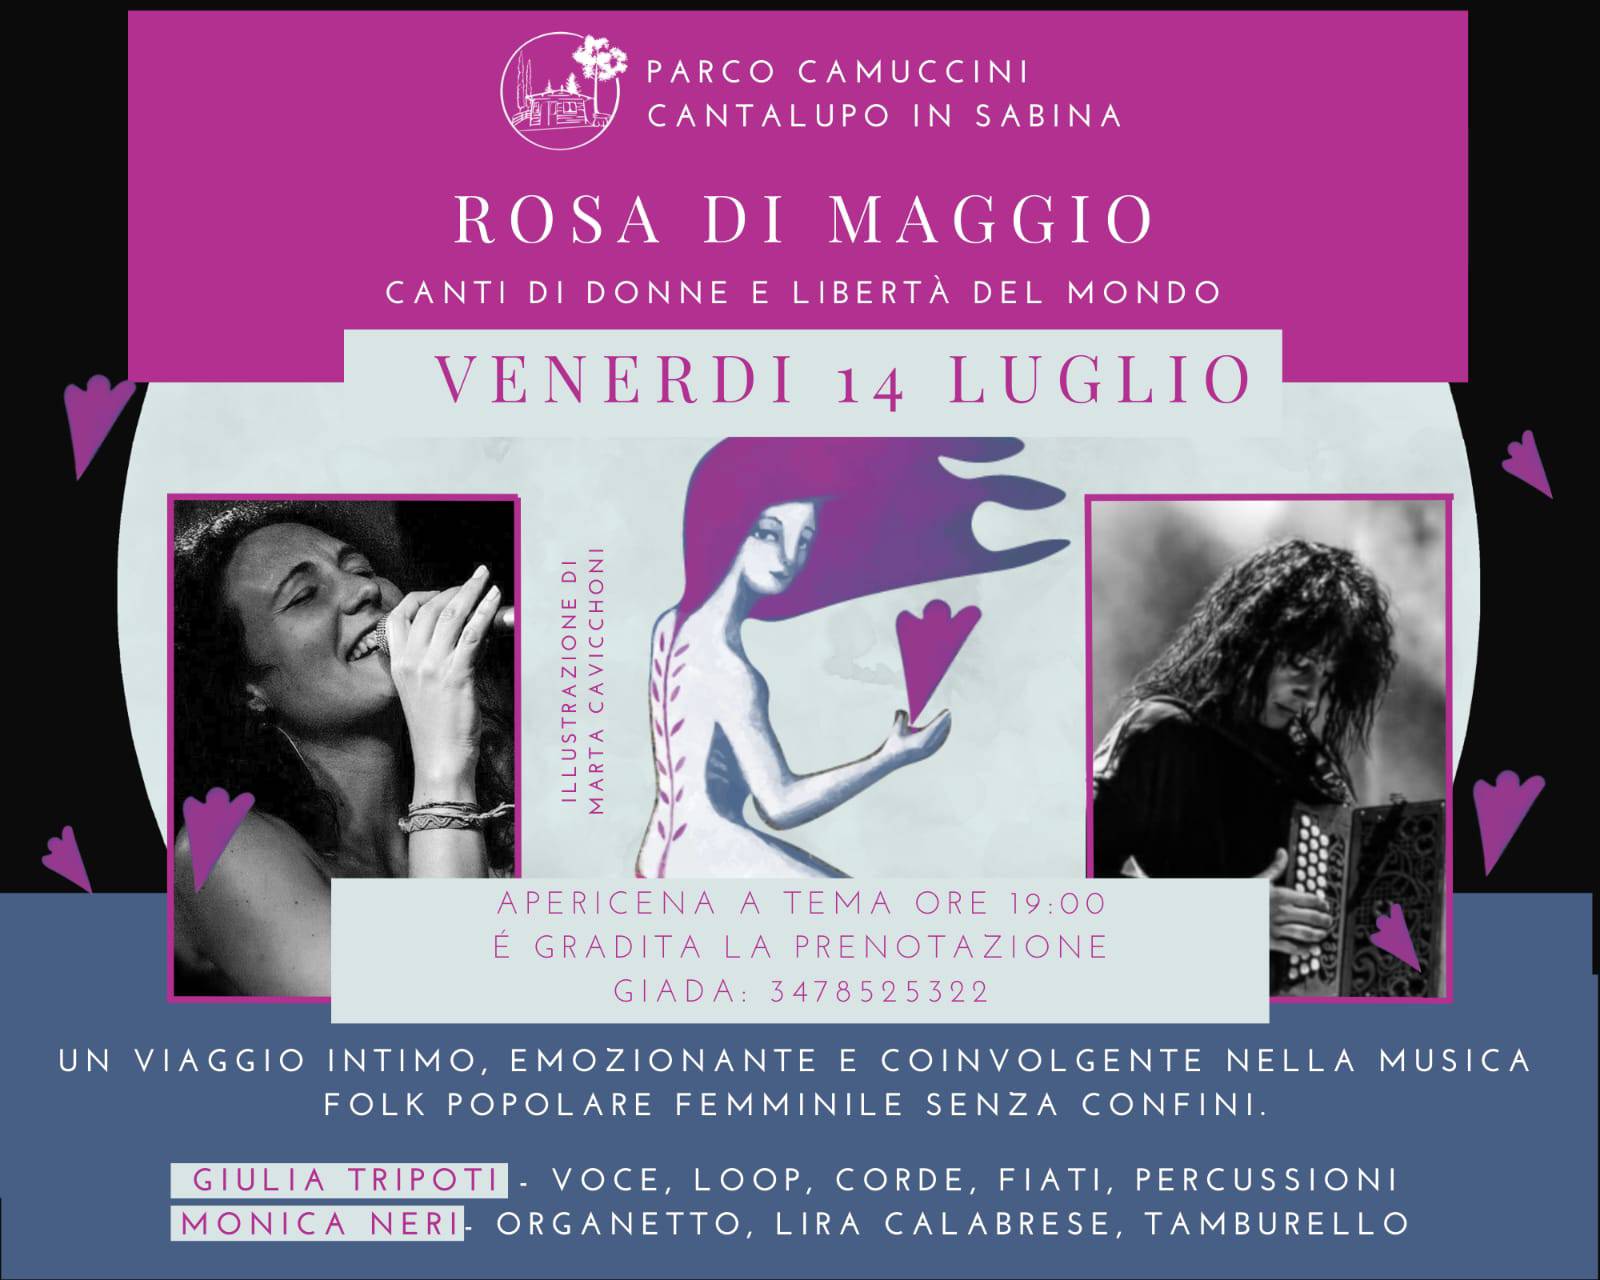 ROSA DI MAGGIO, canti di donne dal Mondo – Giulia Tripoti feat. Monica Neri @Il Chiosco di Cantalupo in Sabina